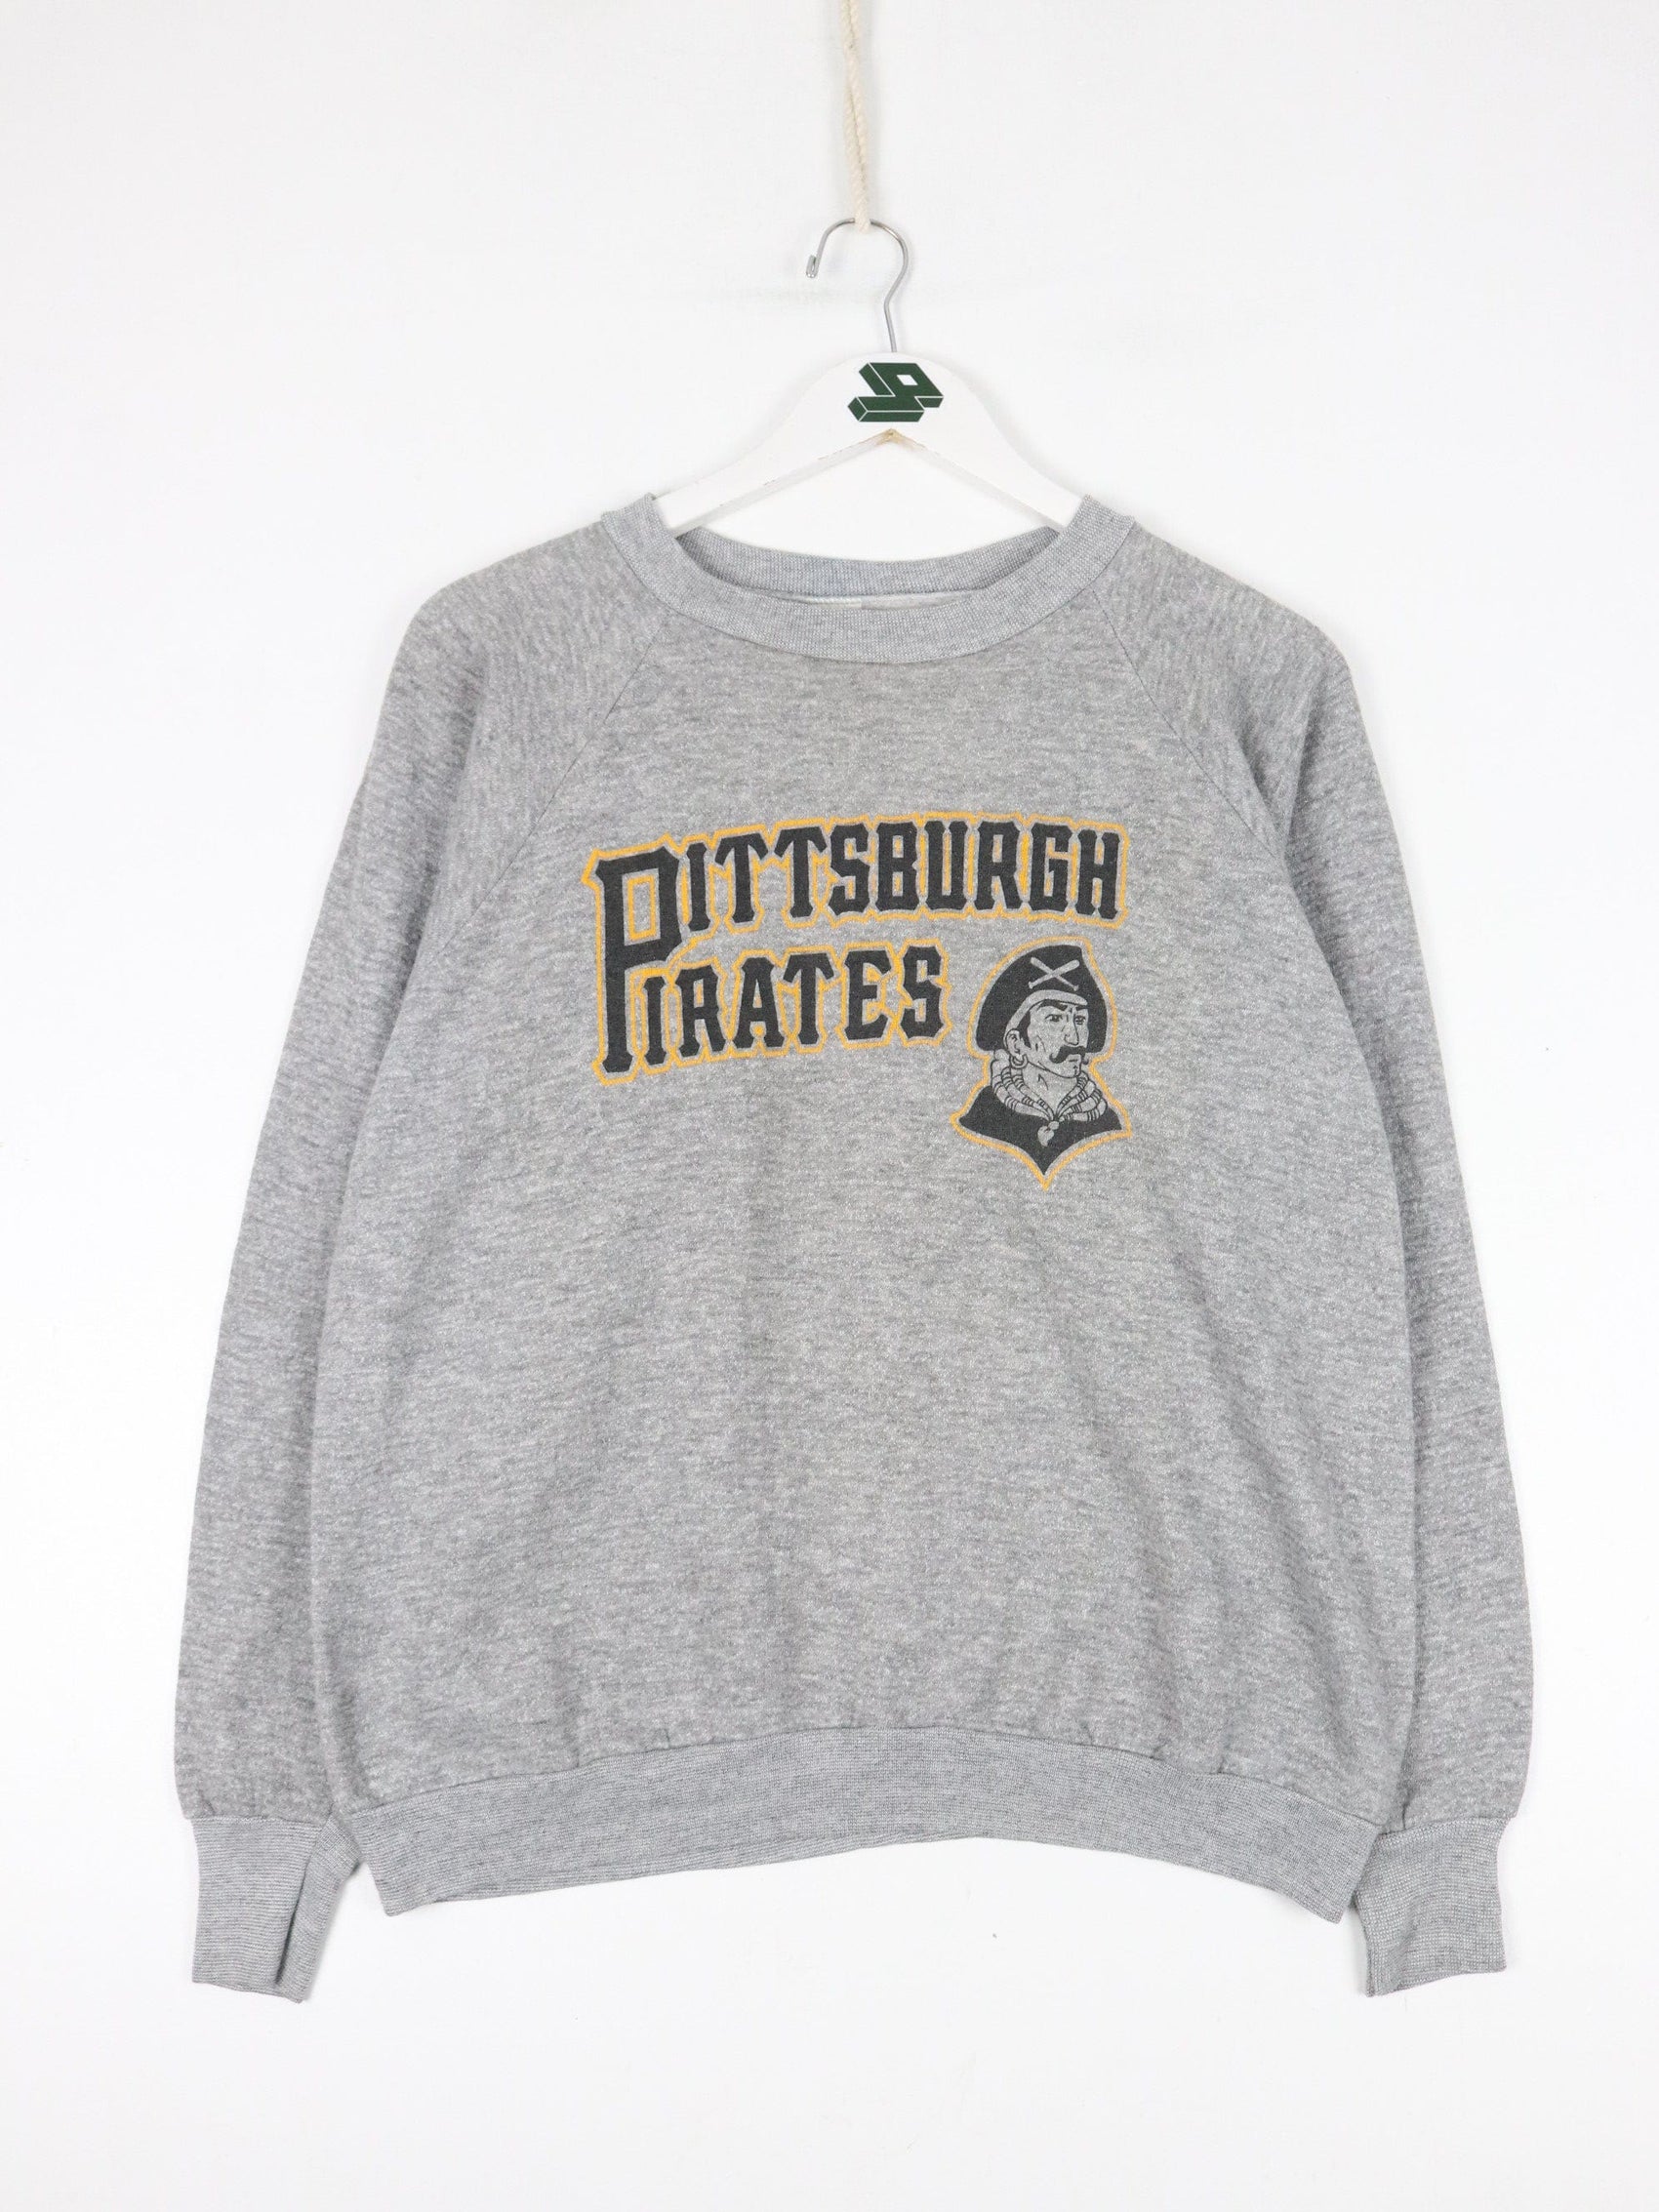 MLB Sweatshirts & Hoodies Vintage Pittsburgh Pirates Sweatshirt Fits Mens Small 80s Health Knit MLB